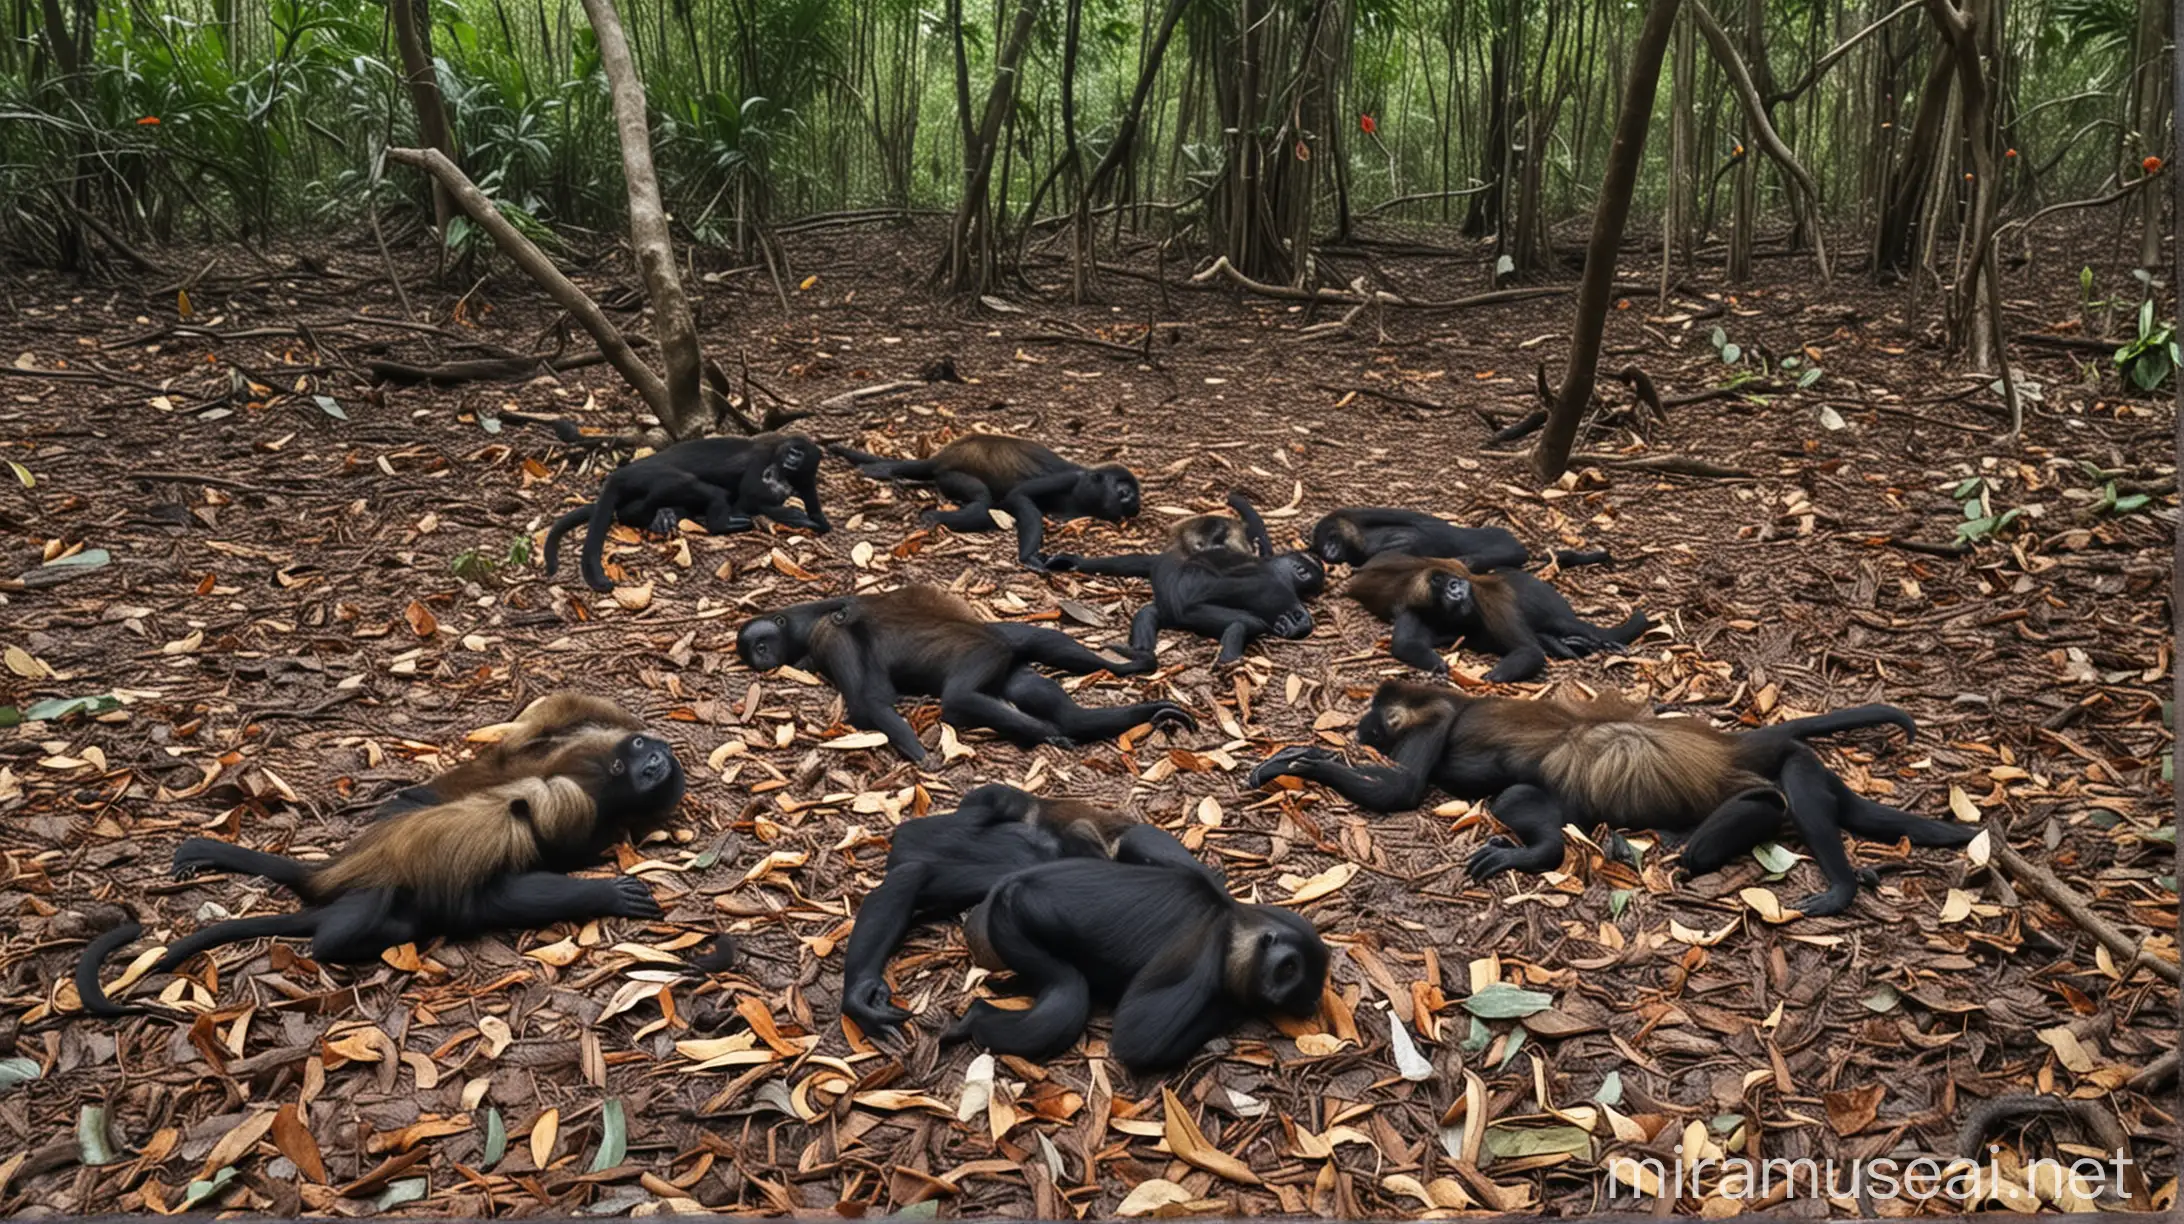 5 howler monkeys Dead in forest